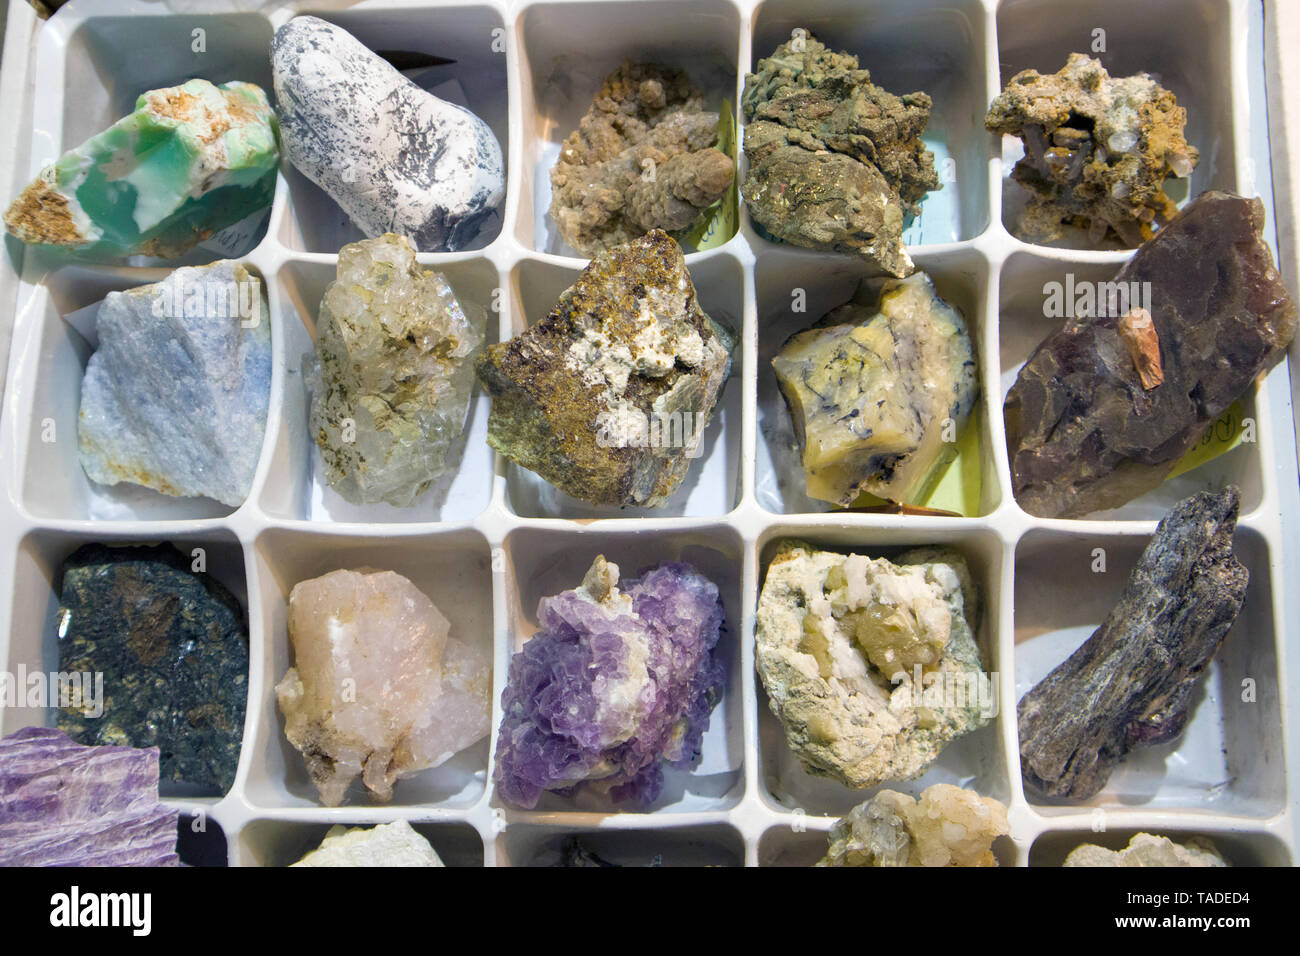 Raw Fragmente von verschiedenen Edelsteinen und Halbedelsteinen und Edelsteinen in speziellen Kasten angeordnet Stockfoto